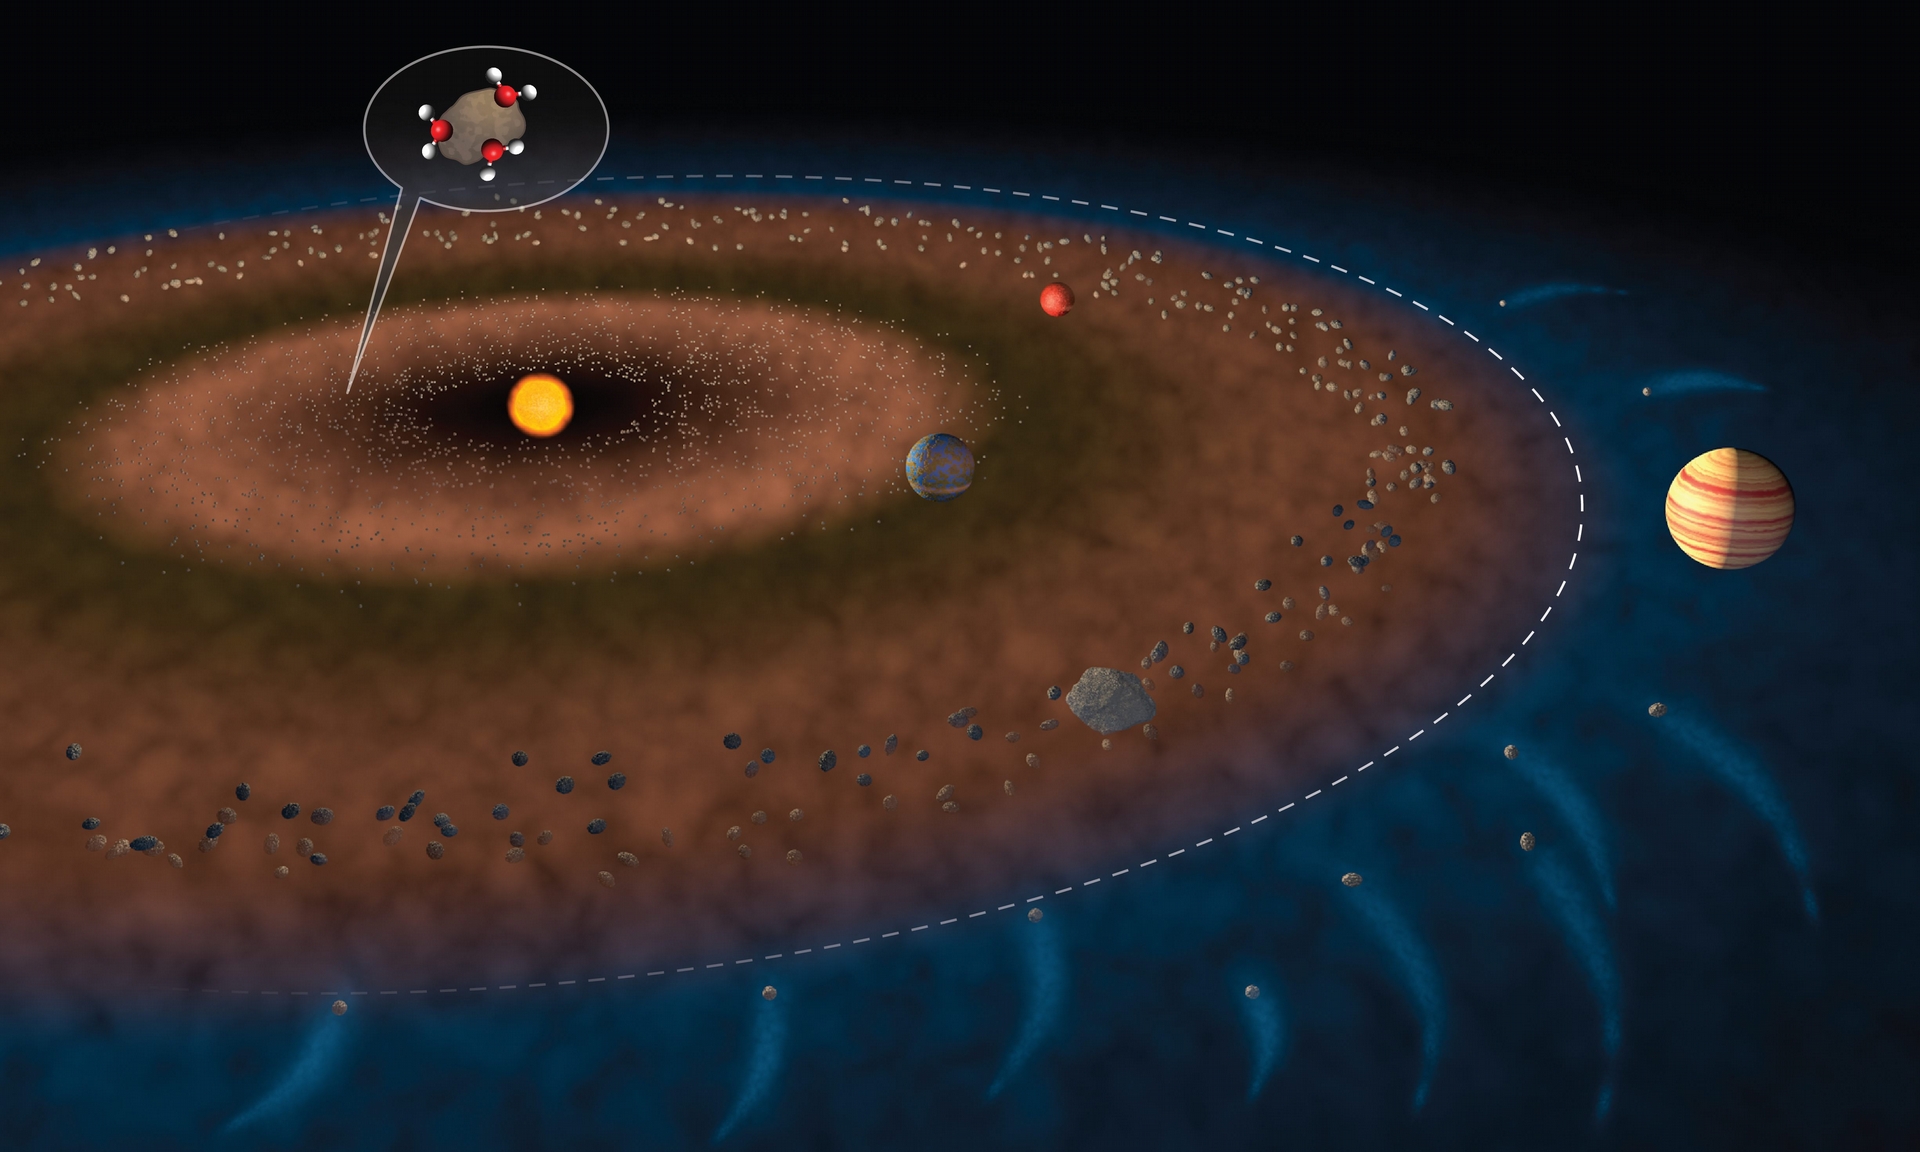 圖中白色虛線顯示了內太陽系和外太陽系的邊界，小行星帶大致位於火星和木星之間。圖片上緣的放大圖示顯示了附著在岩石碎片上的水分子，意味這種天體可能將水帶到地球。Credit: Jack Cook/Woods Hole Oceanographic Institution. Click image to download hi-res version.